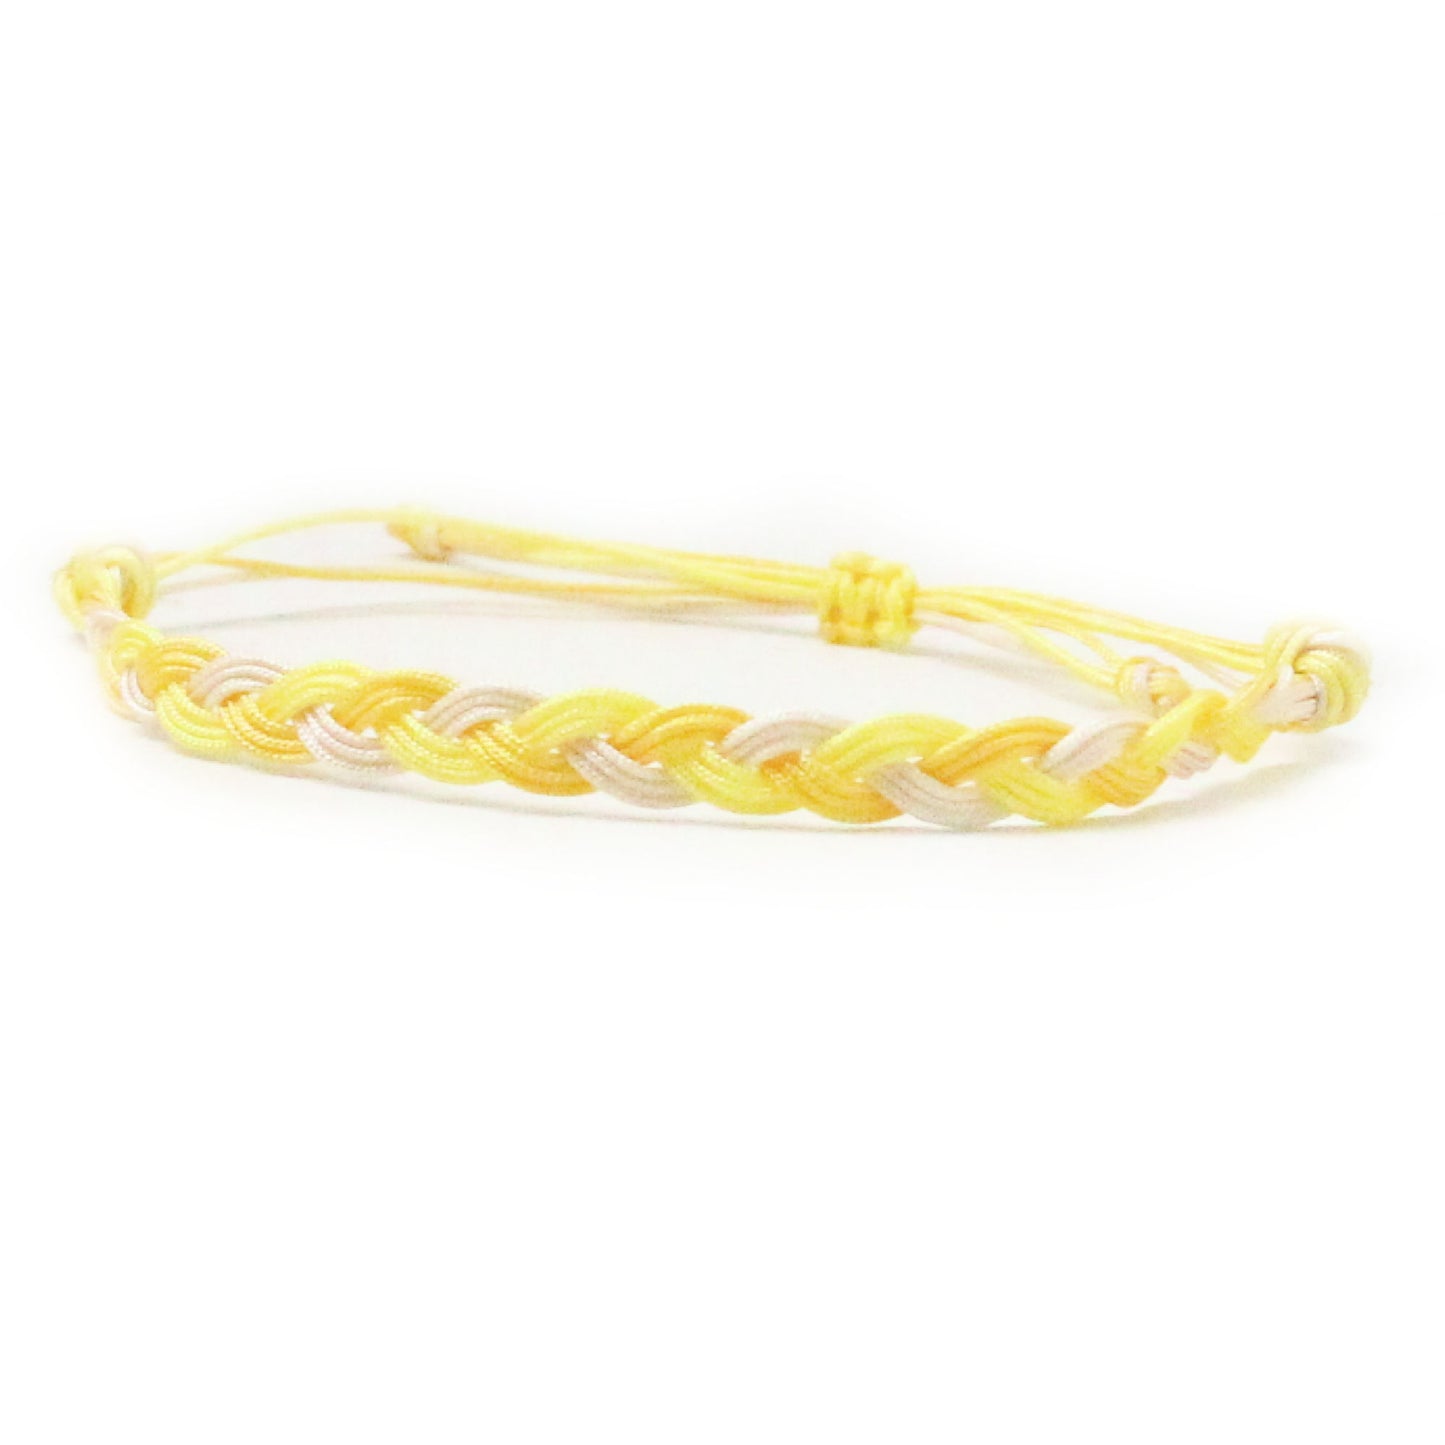 Yellow Awareness Bracelet